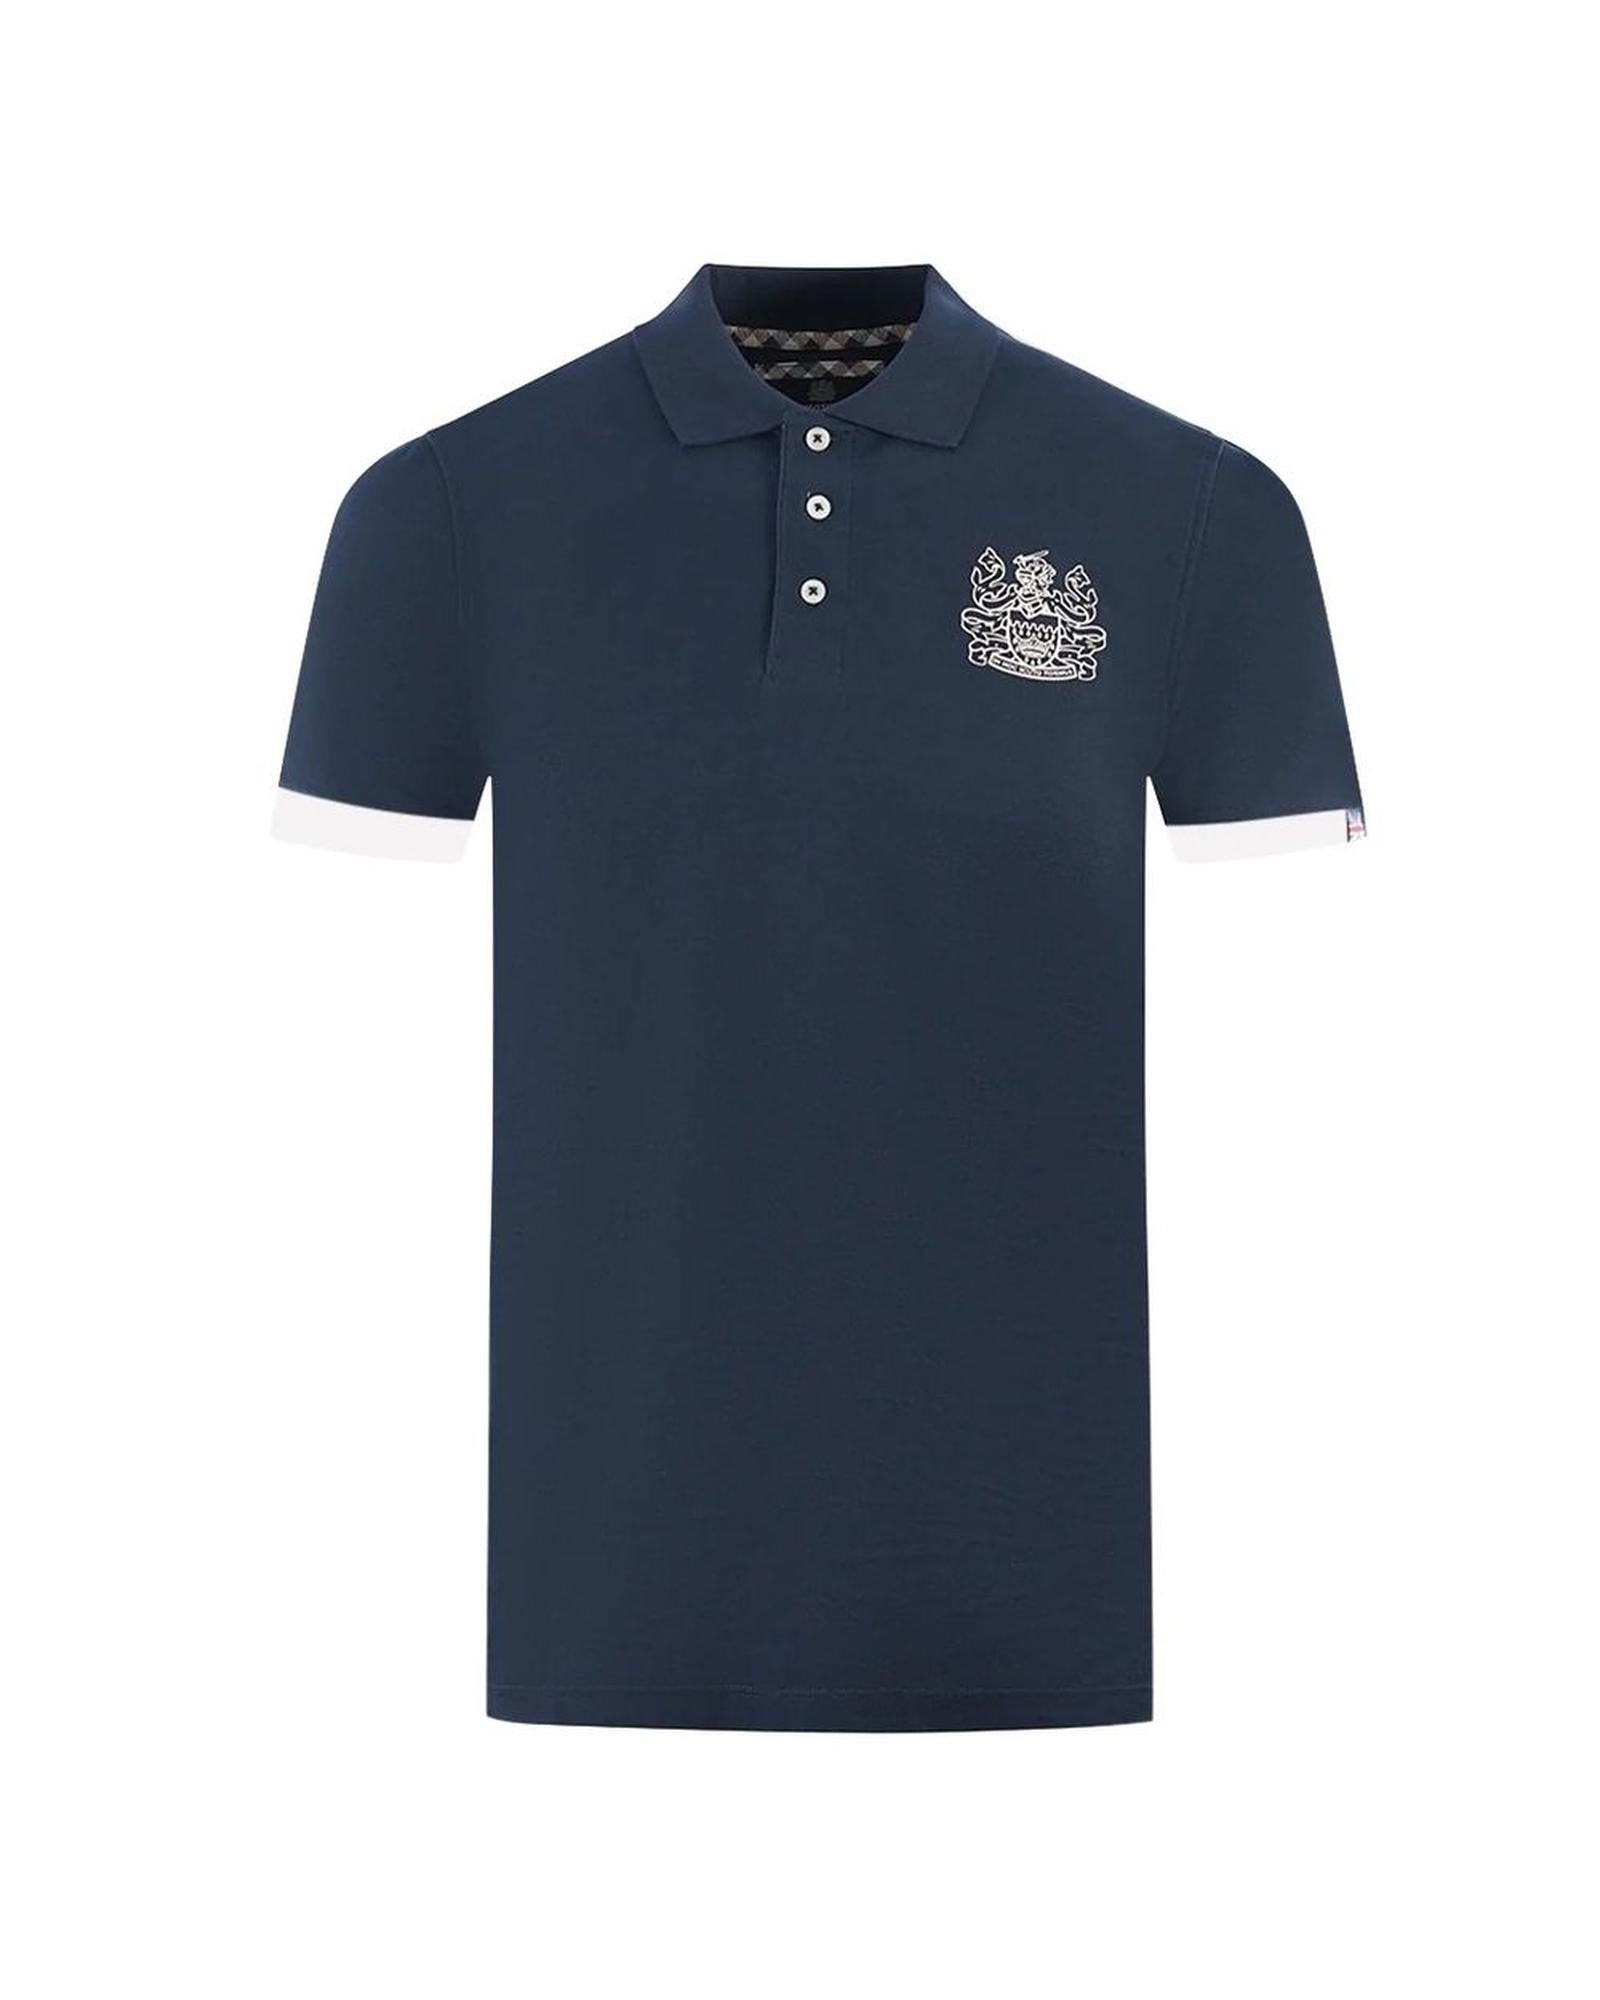 Men's Blue Cotton Polo Shirt - XL